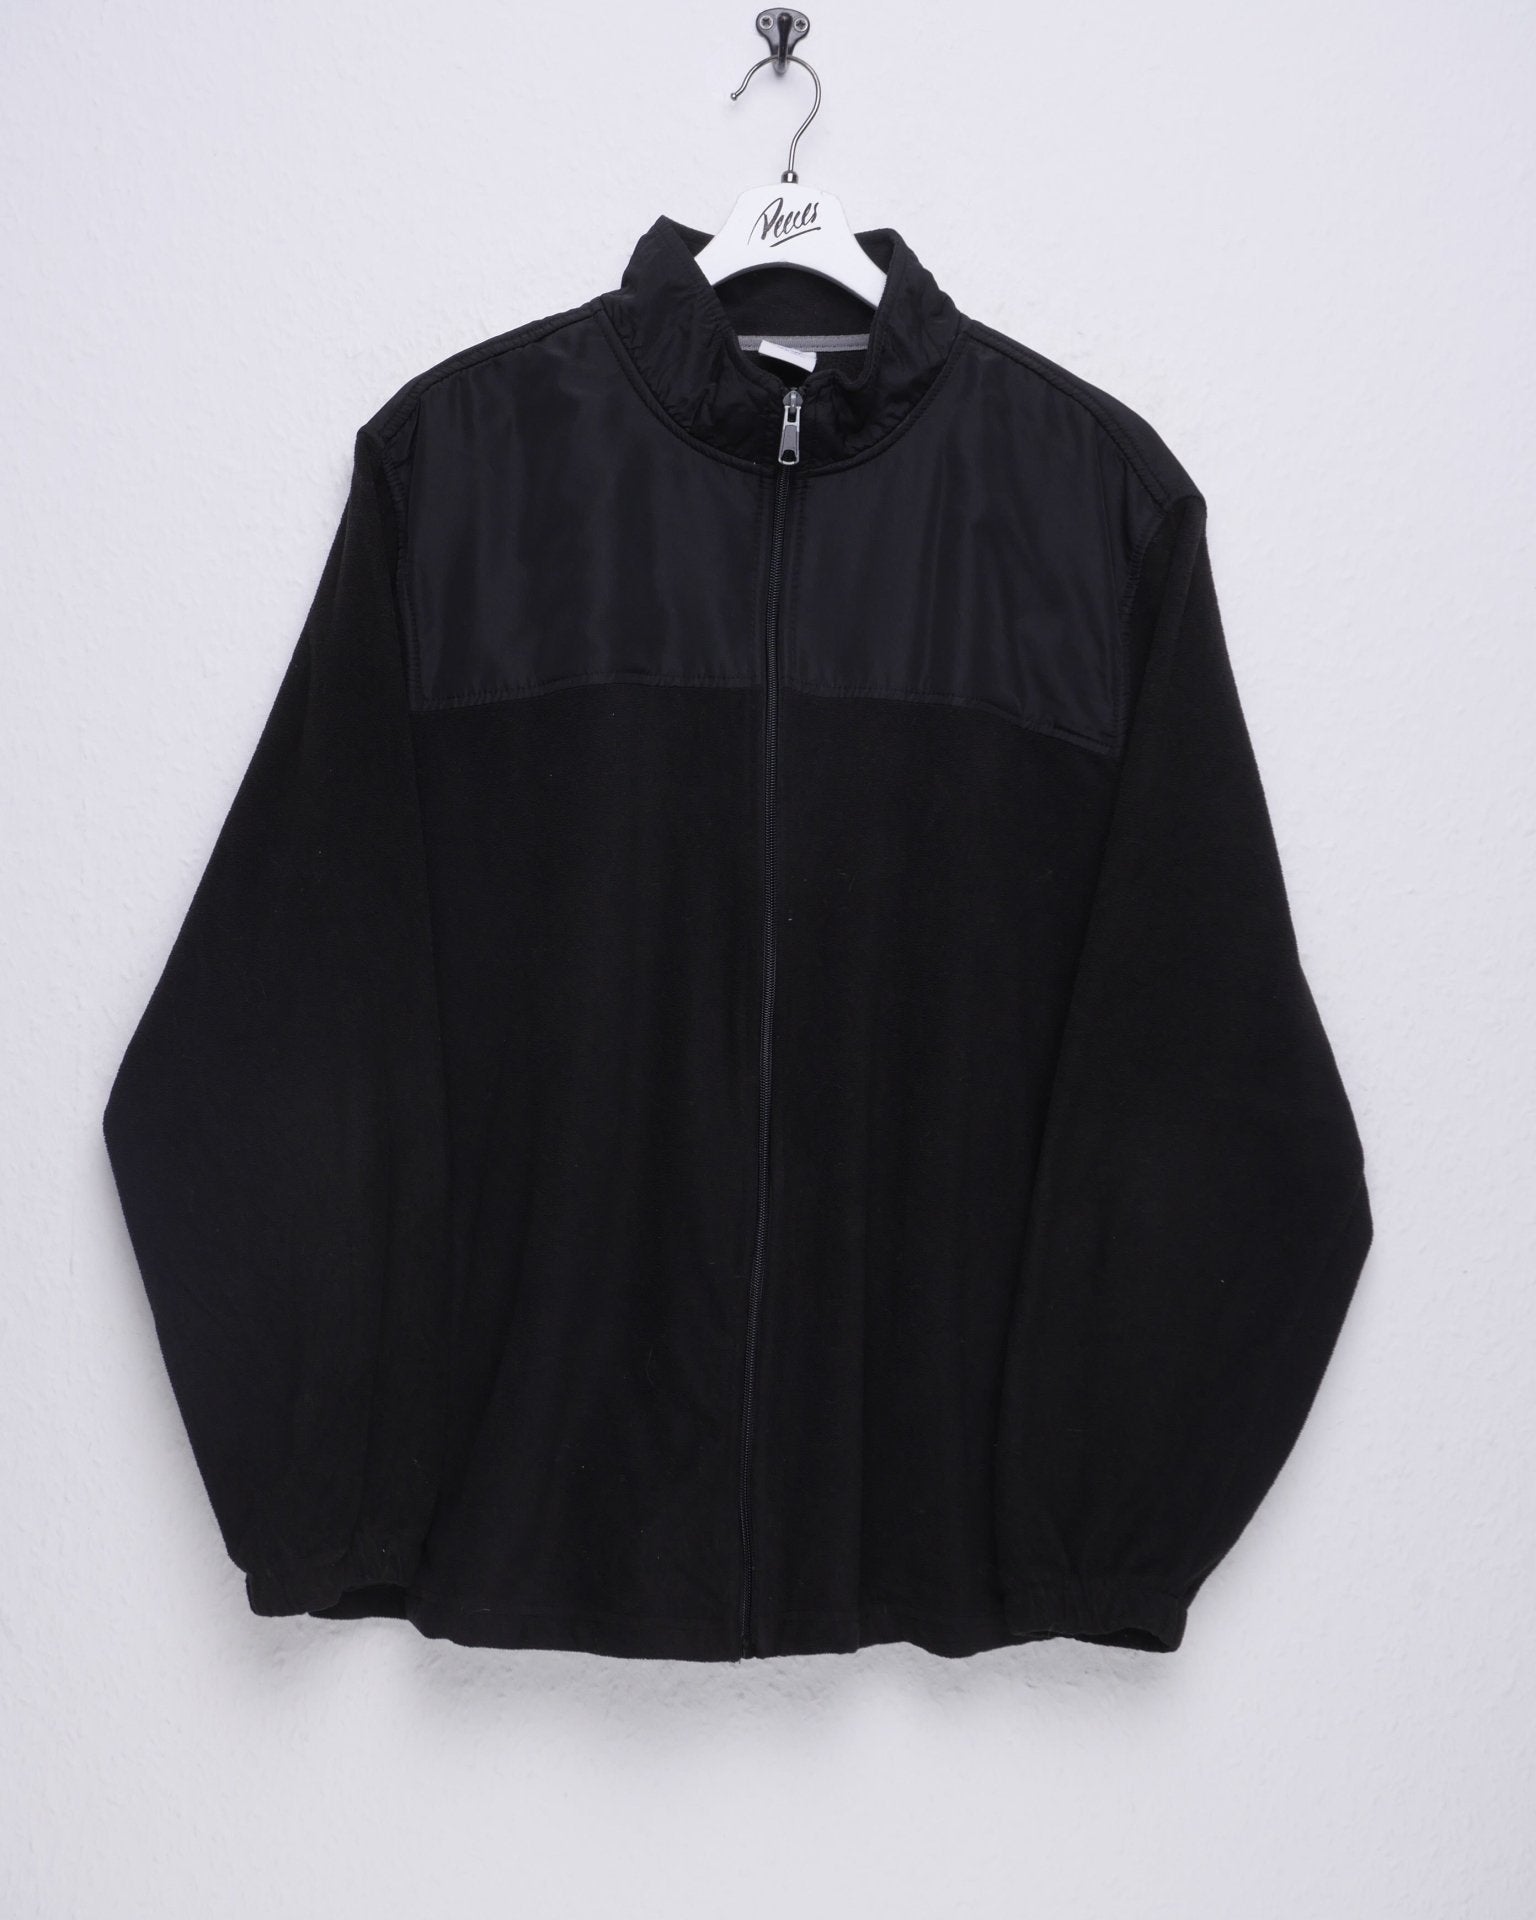 Starter plain black Vintage Fleece Zip Sweater - Peeces